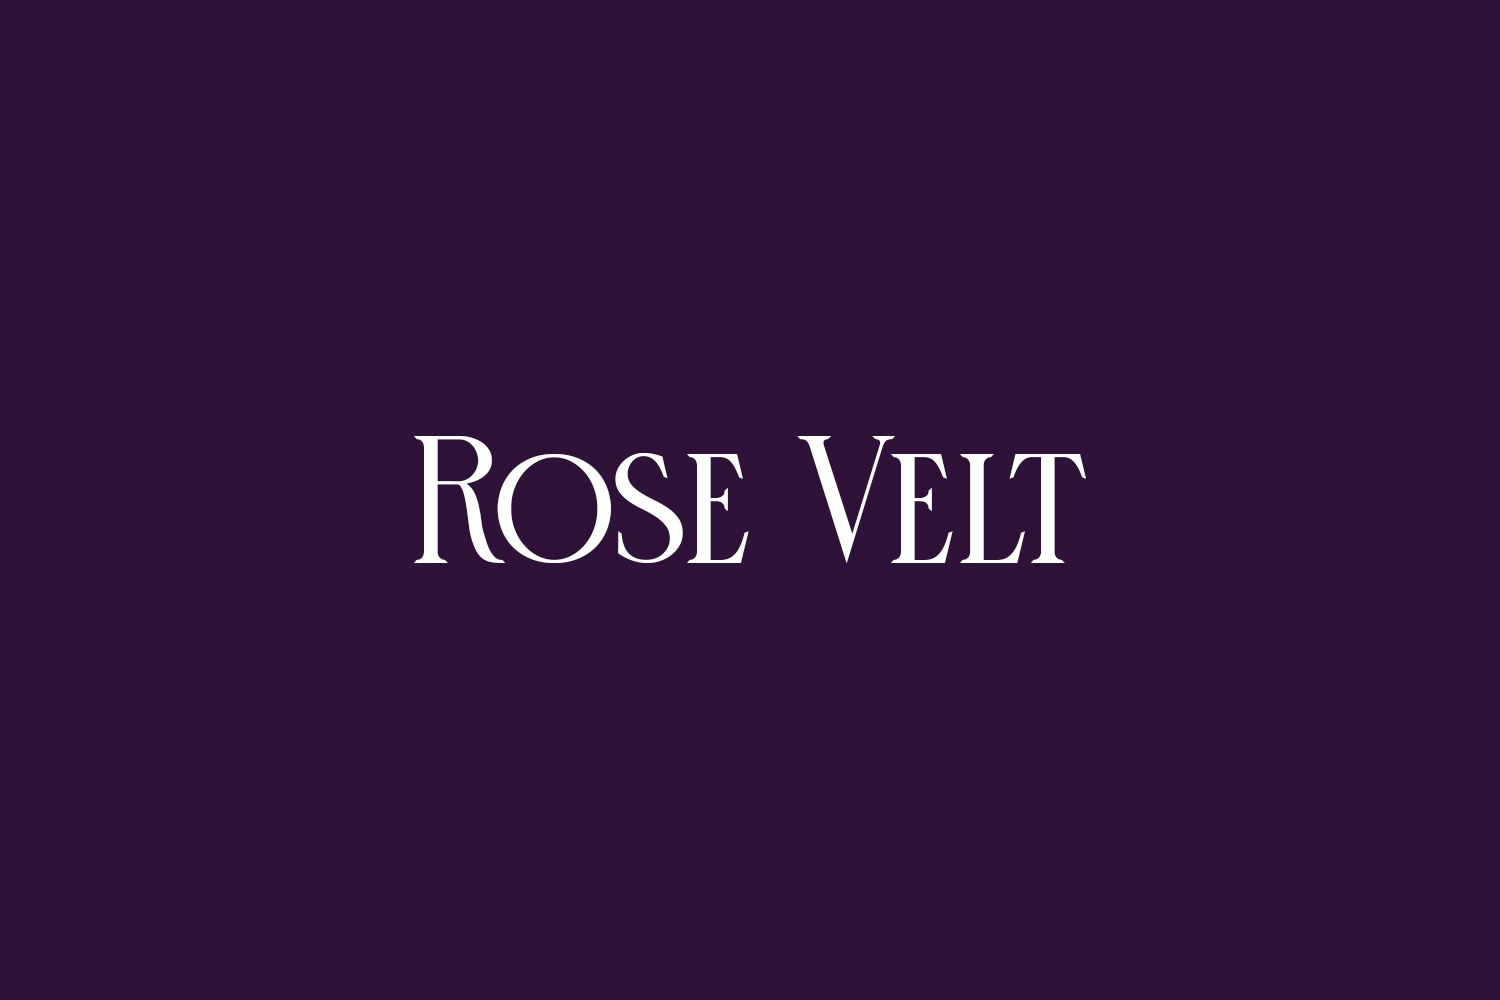 Rose Velt Free Font